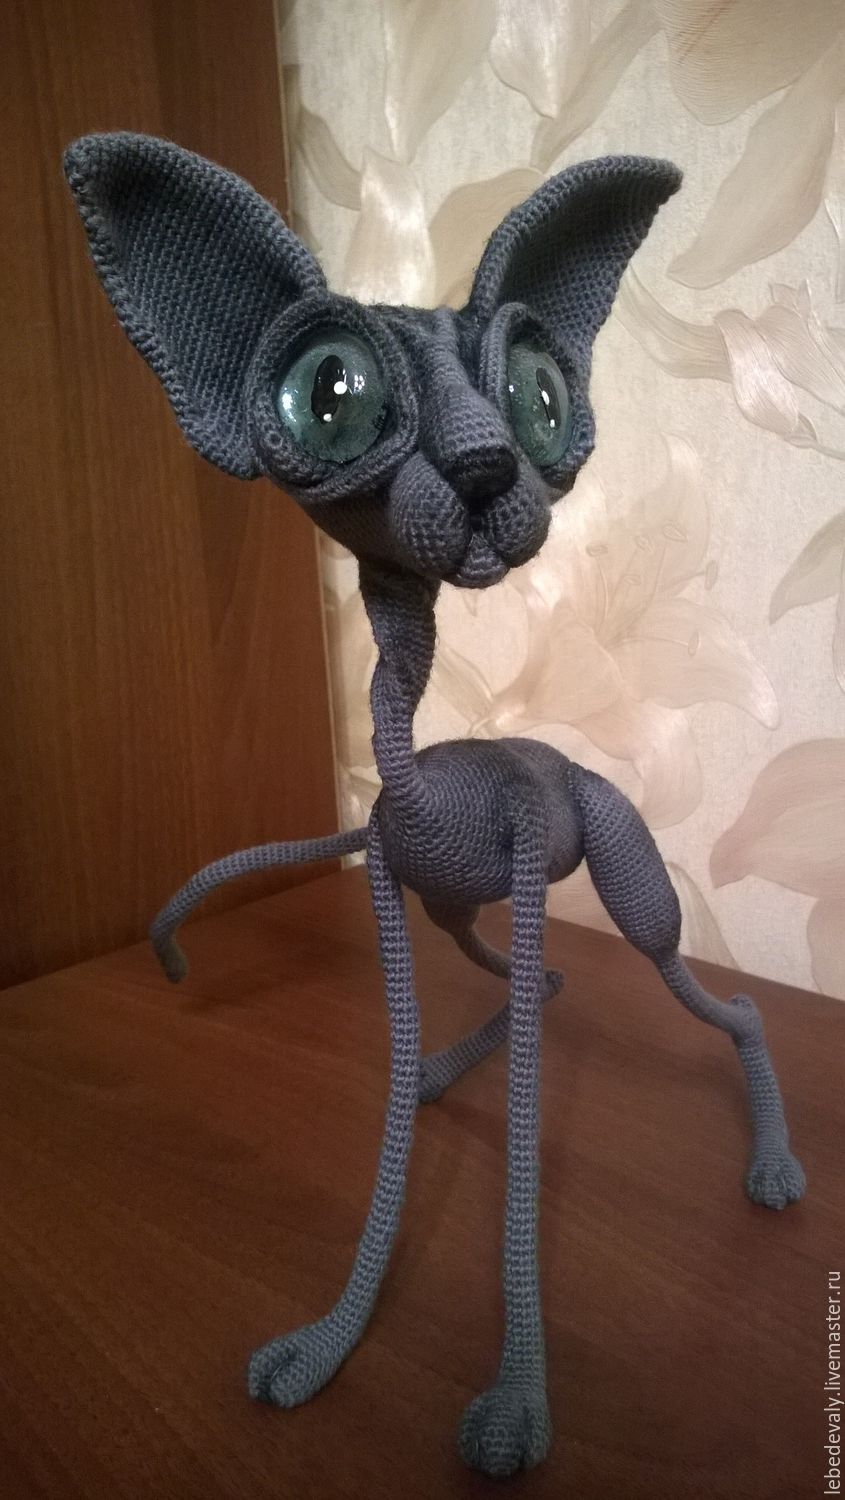 Сфинкс - лысый кот серого окраса с голубыми глазами в интернет-магазине  Ярмарка Мастеров по цене 7000 ₽ – BN8MVRU | Мягкие игрушки, Сургут -  доставка по России